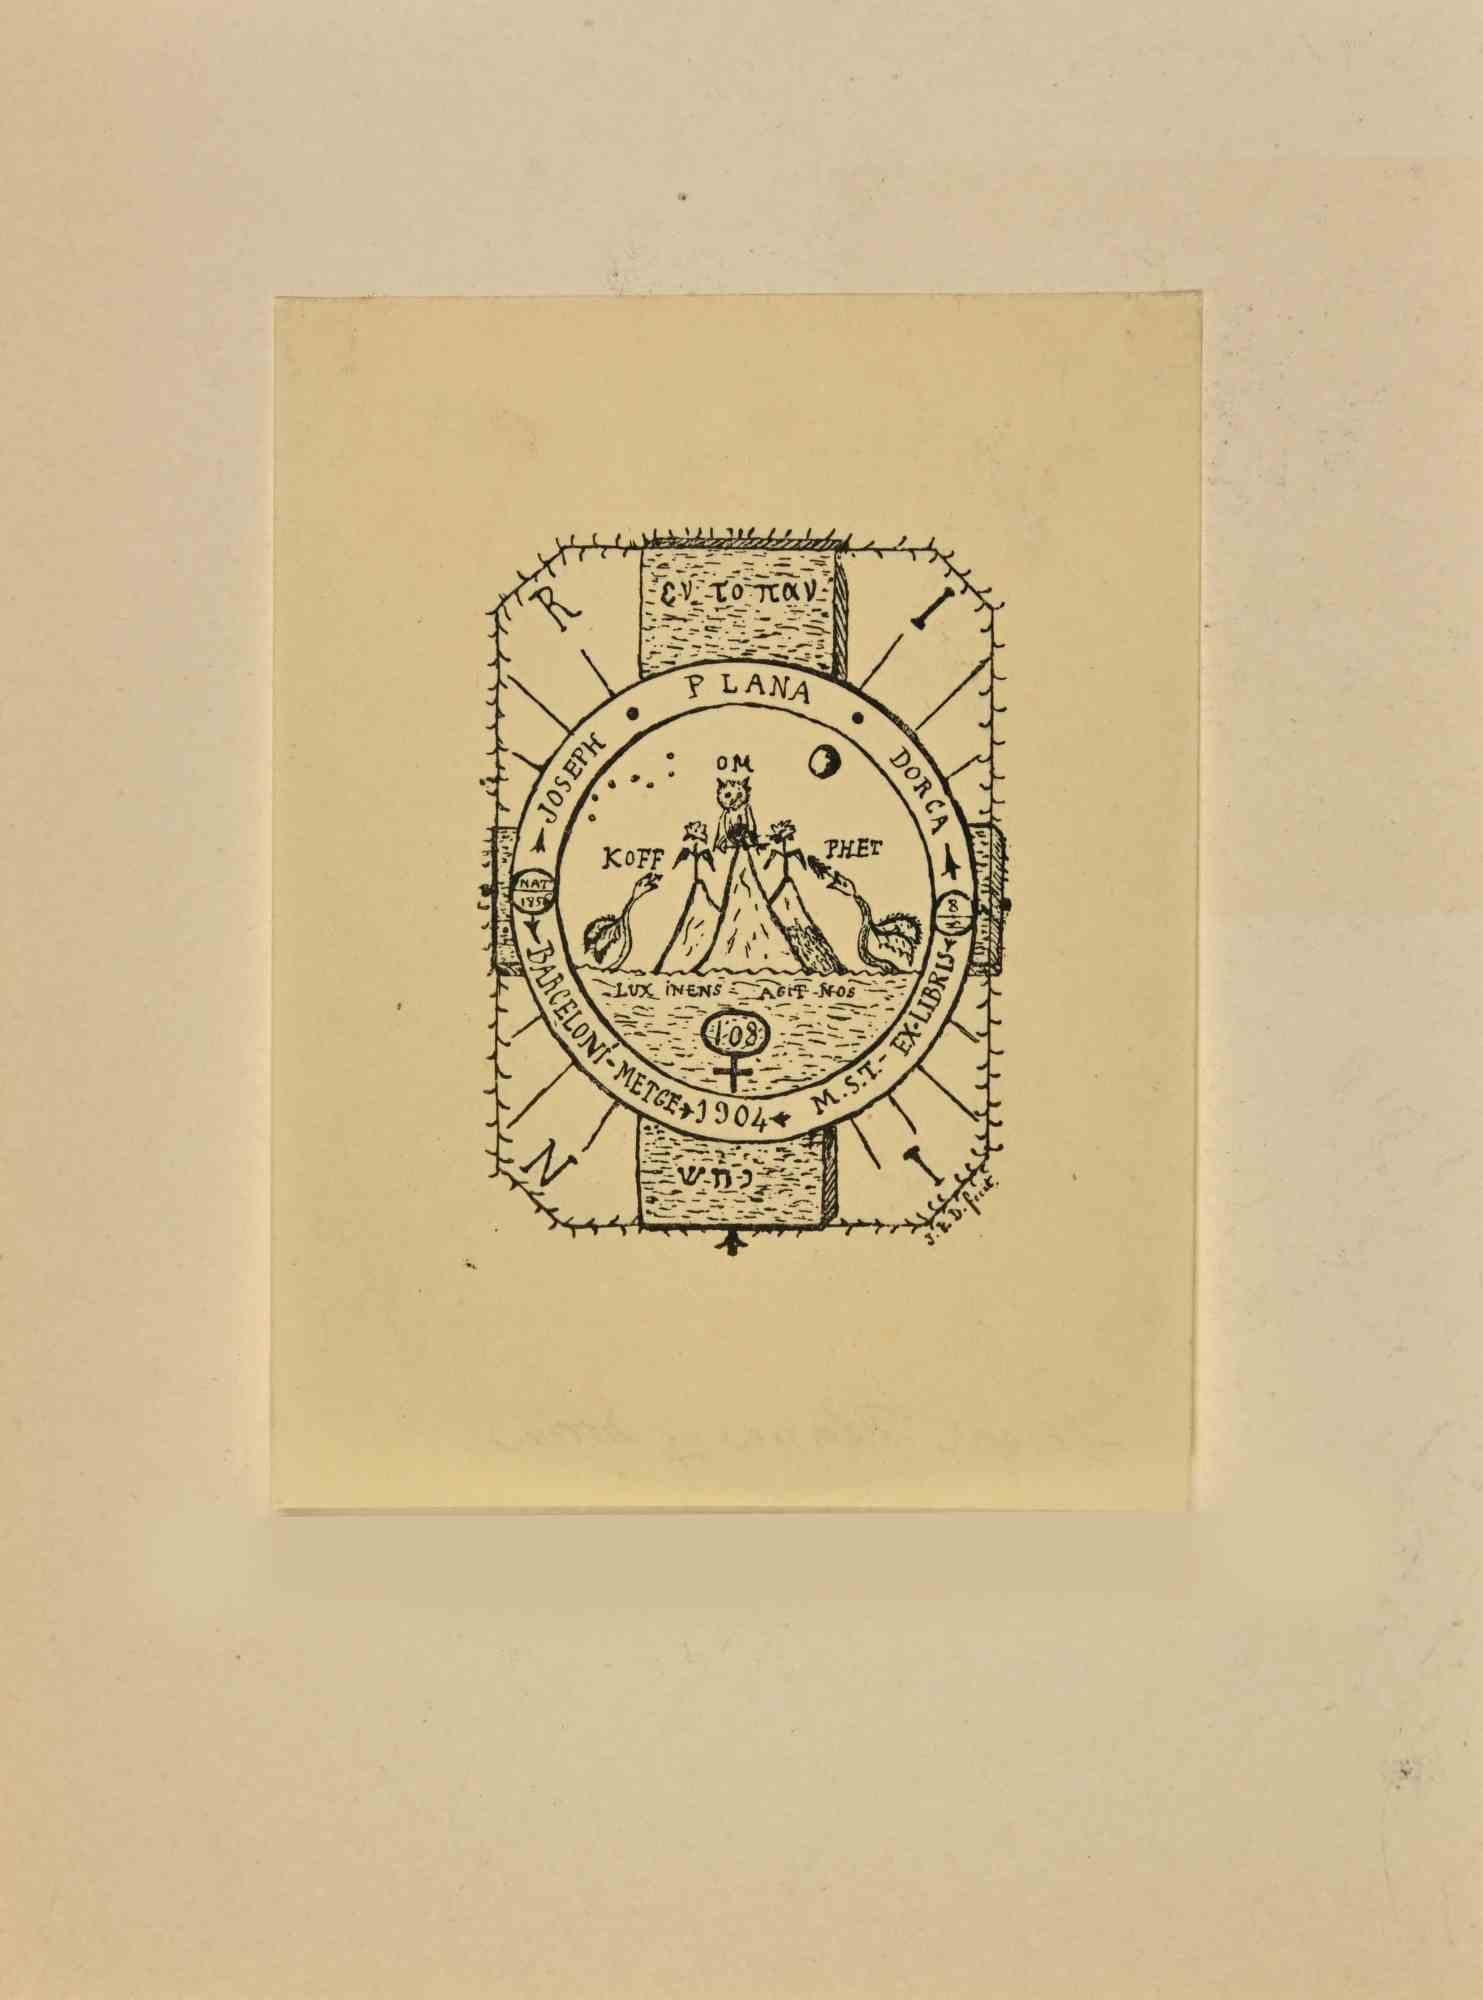  Ex Libris - Joseph Plana Dorca ist ein modernes Kunstwerk, das 1904 von dem spanischen Autor Joseph Plana Dorca geschaffen wurde.
 
Ex Libris. S/W-Holzschnitt auf Elfenbeinpapier.  
 
Das Werk ist auf Karton geklebt.
 
Abmessungen insgesamt: 20x 15